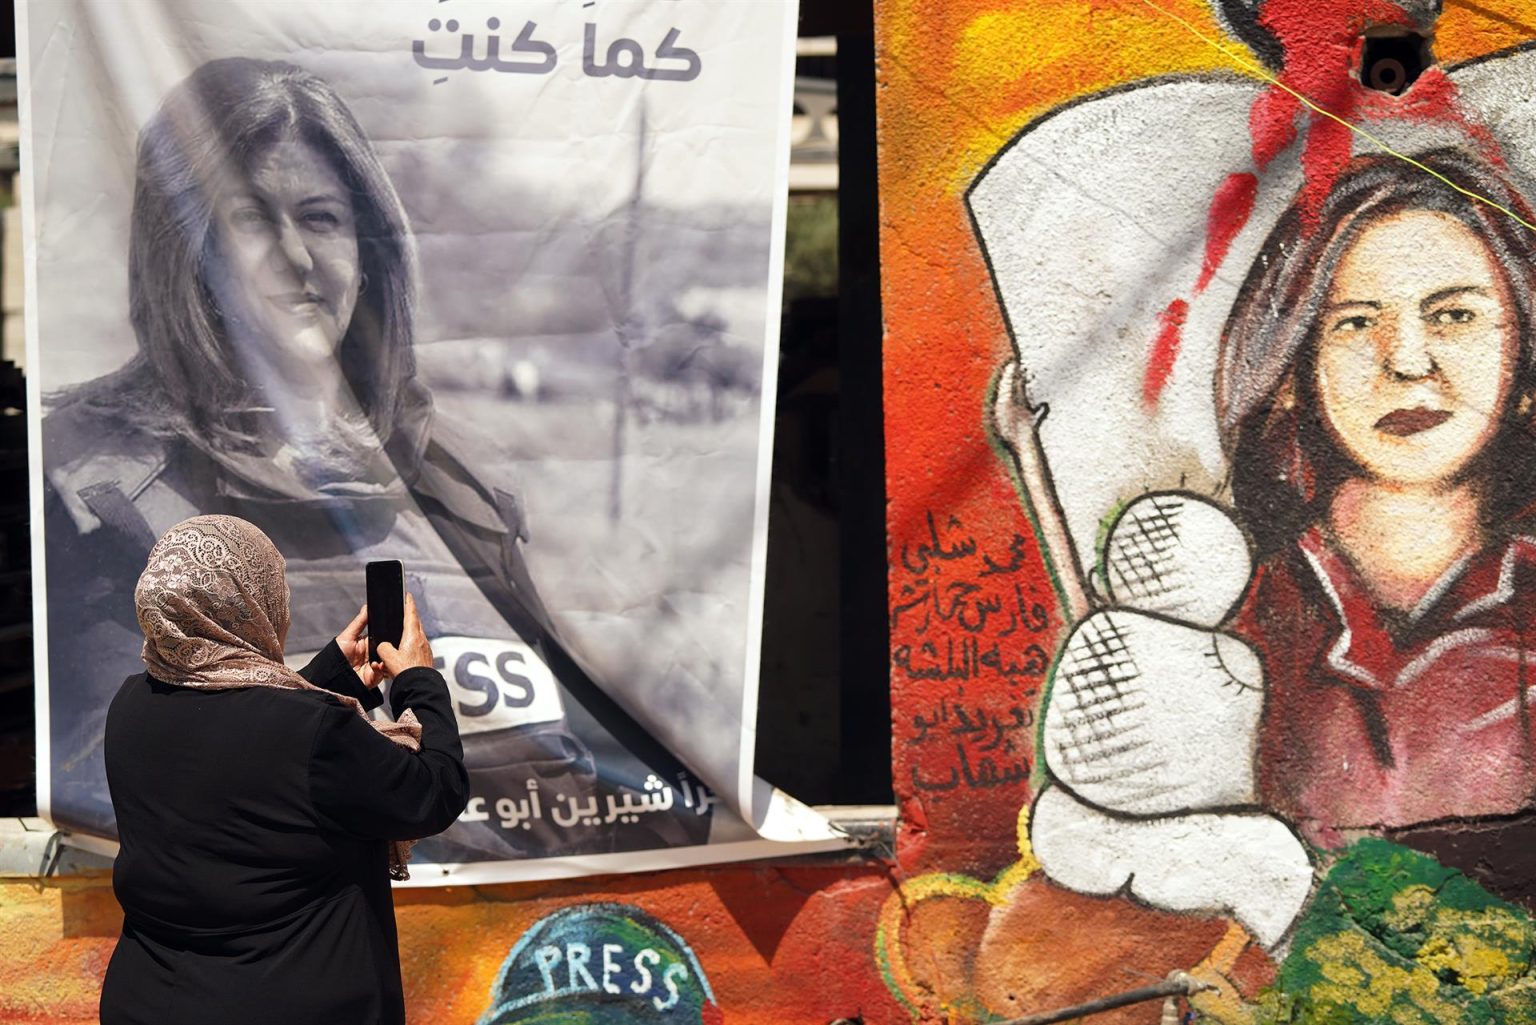 Una mujer toma fotos de un retrato y un mural en memoria de la periodista de Al Yazira Shireen Abu Akleh, que conforman un improvisado altar al que los palestinos acuden a rezar y rendirle homenaje, en Yenín, Cisjordania. Imagen de archivo. EFE/ Sara Gómez Armas